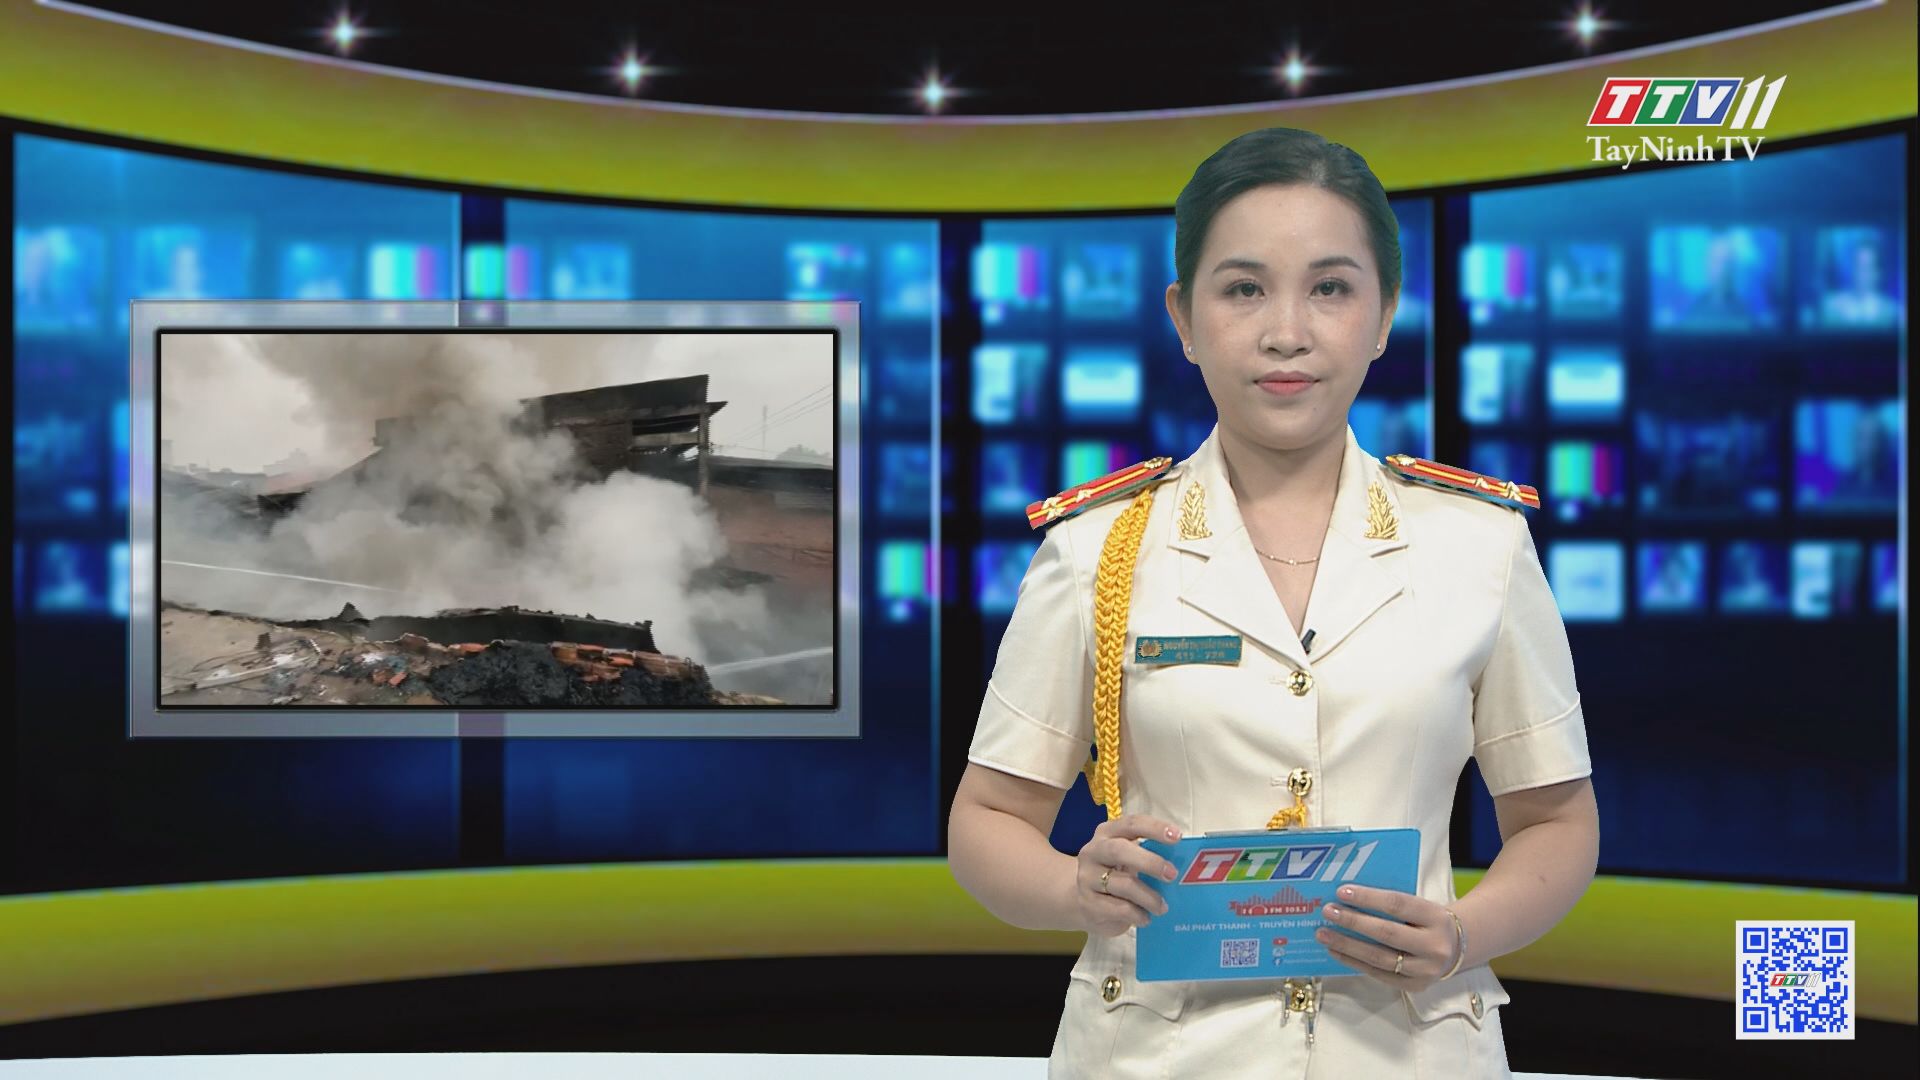 Hạn chế nguy cơ cháy nổ do sự cố về điện ở hộ gia đình | AN NINH TÂY NINH | TayNinhTV